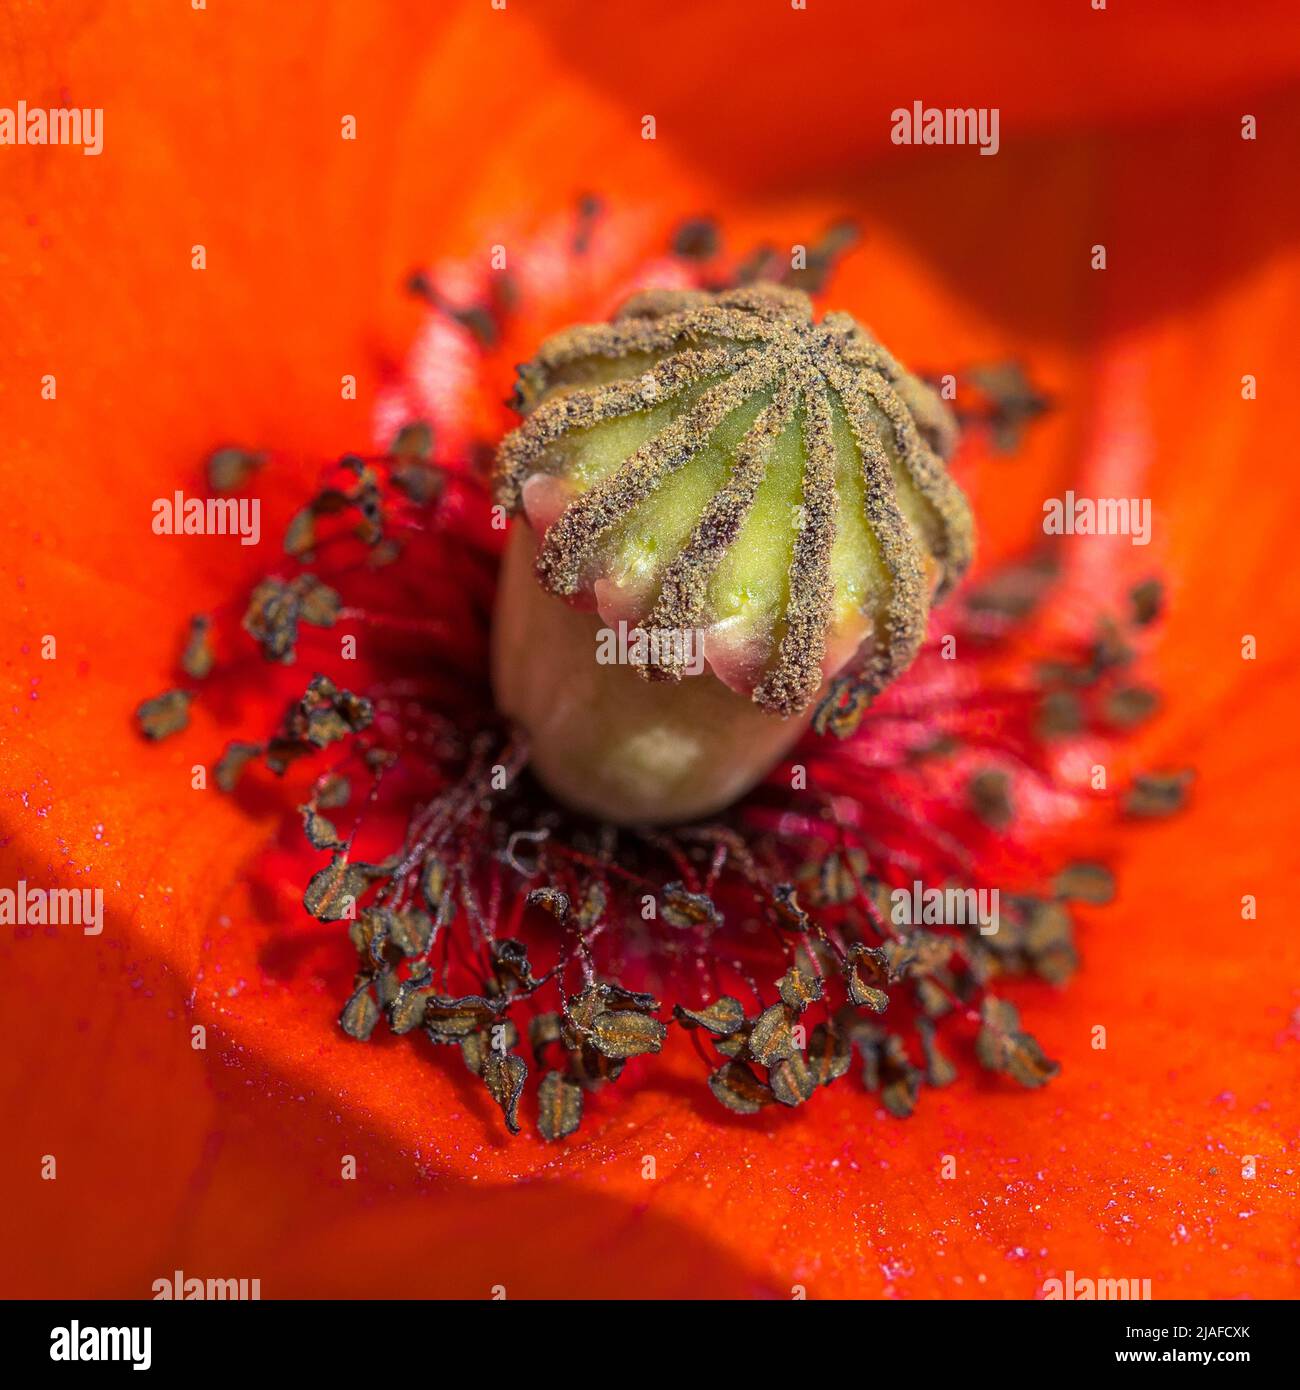 Amapola común, amapola de maíz, amapola roja (papaver rhoeas), flor de amapola, detalle ovar y stamina, Alemania, Baden-Württemberg Foto de stock